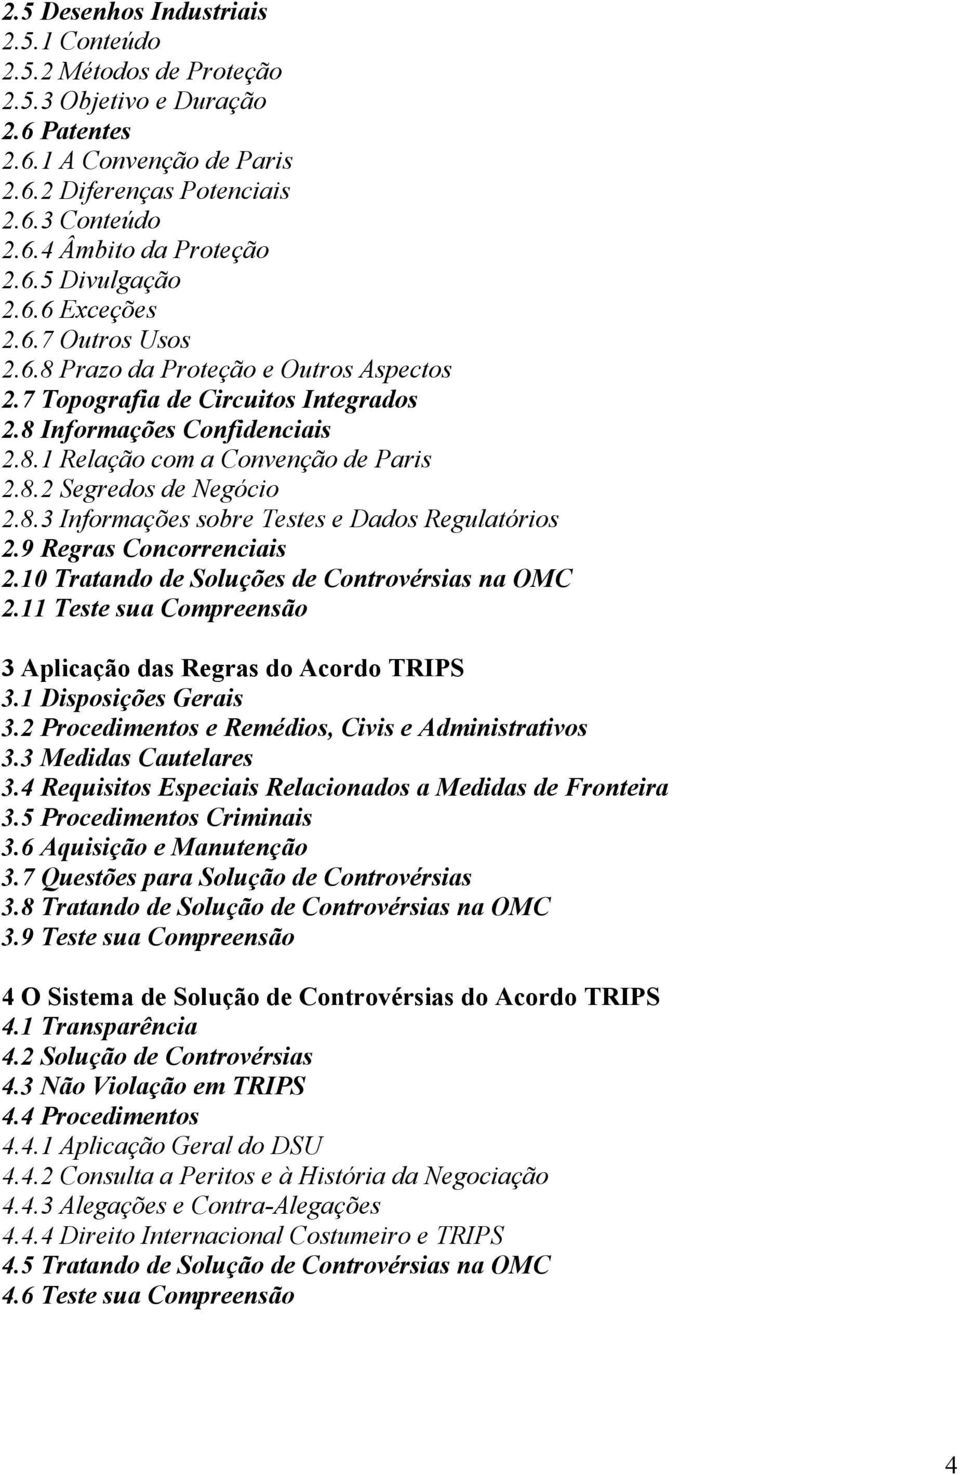 8.2 Segredos de Negócio 2.8.3 Informações sobre Testes e Dados Regulatórios 2.9 Regras Concorrenciais 2.10 Tratando de Soluções de Controvérsias na OMC 2.